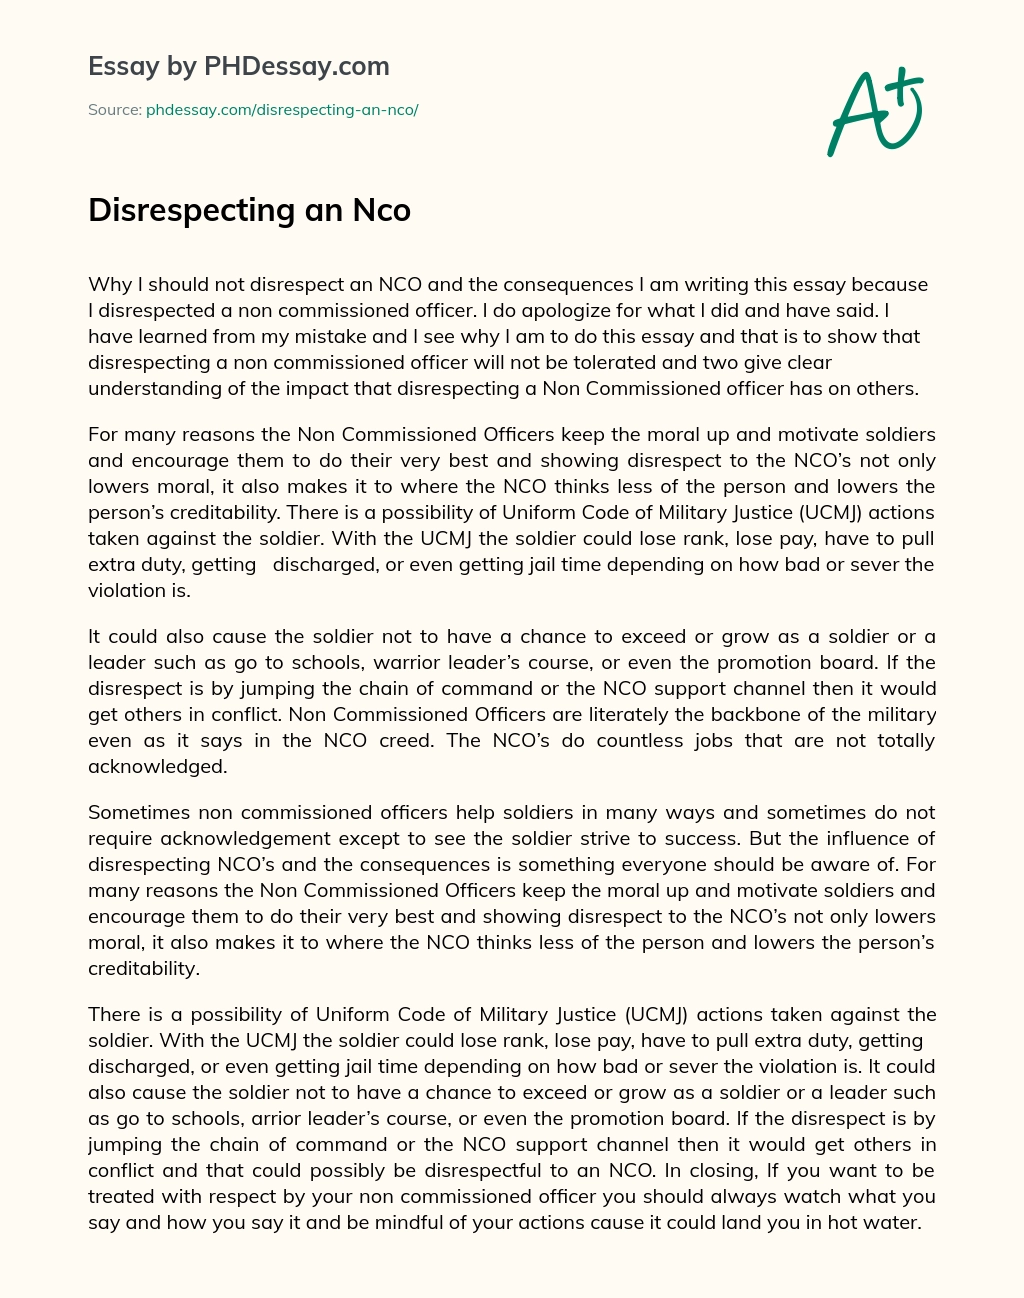 Disrespecting an Nco essay